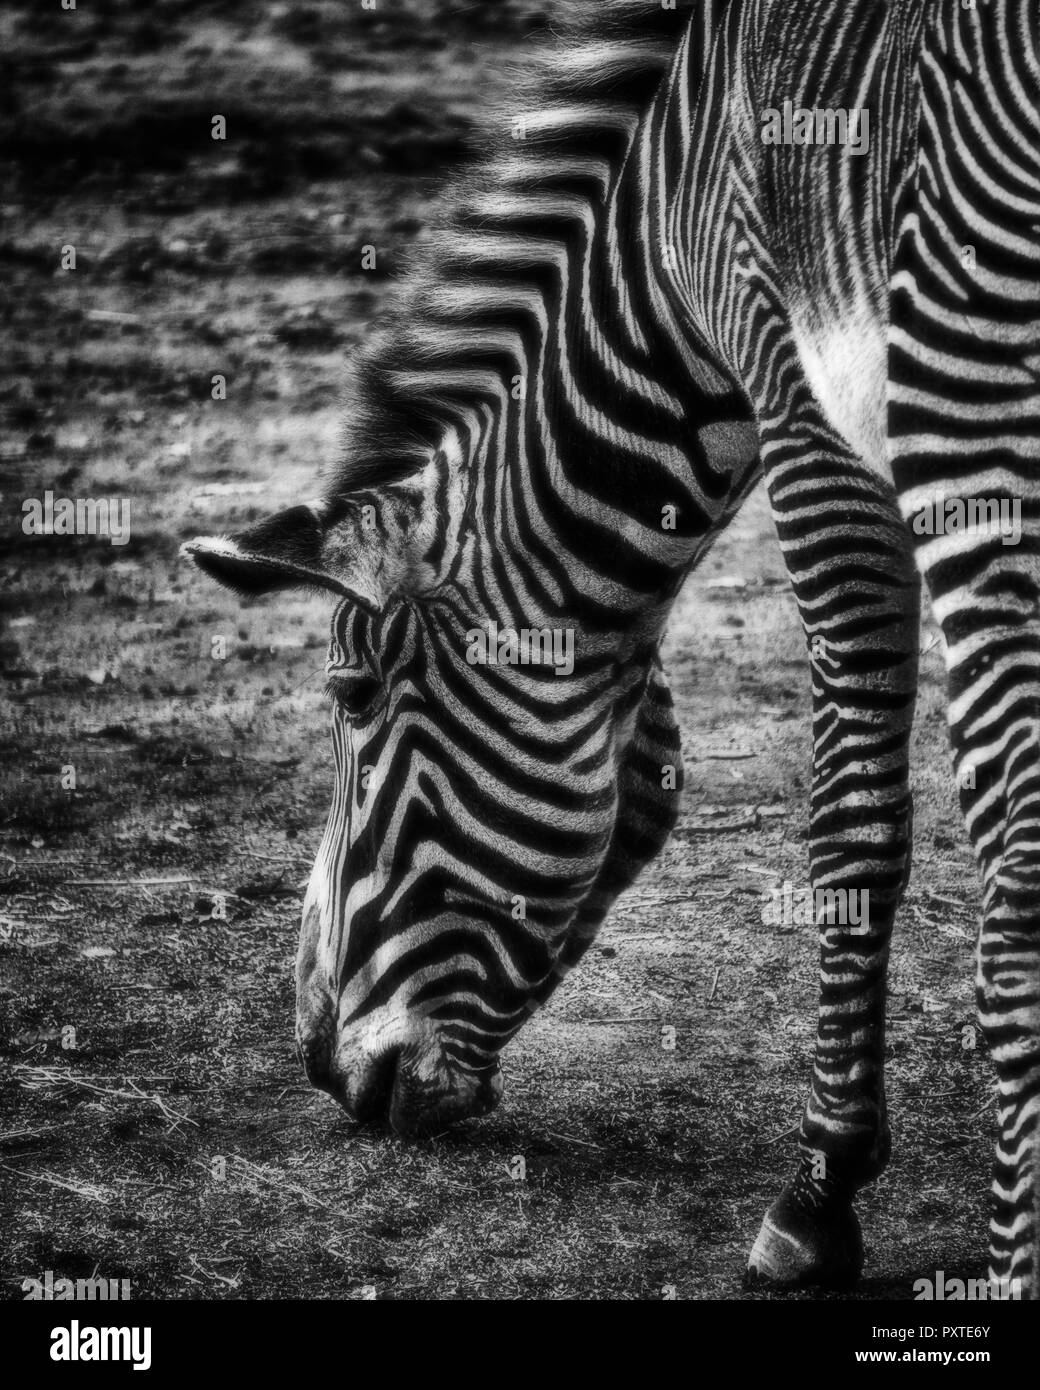 Ein Schwarzweiß-Bild einer beweidung Zebra. Schwarz und Weiß. Stockfoto